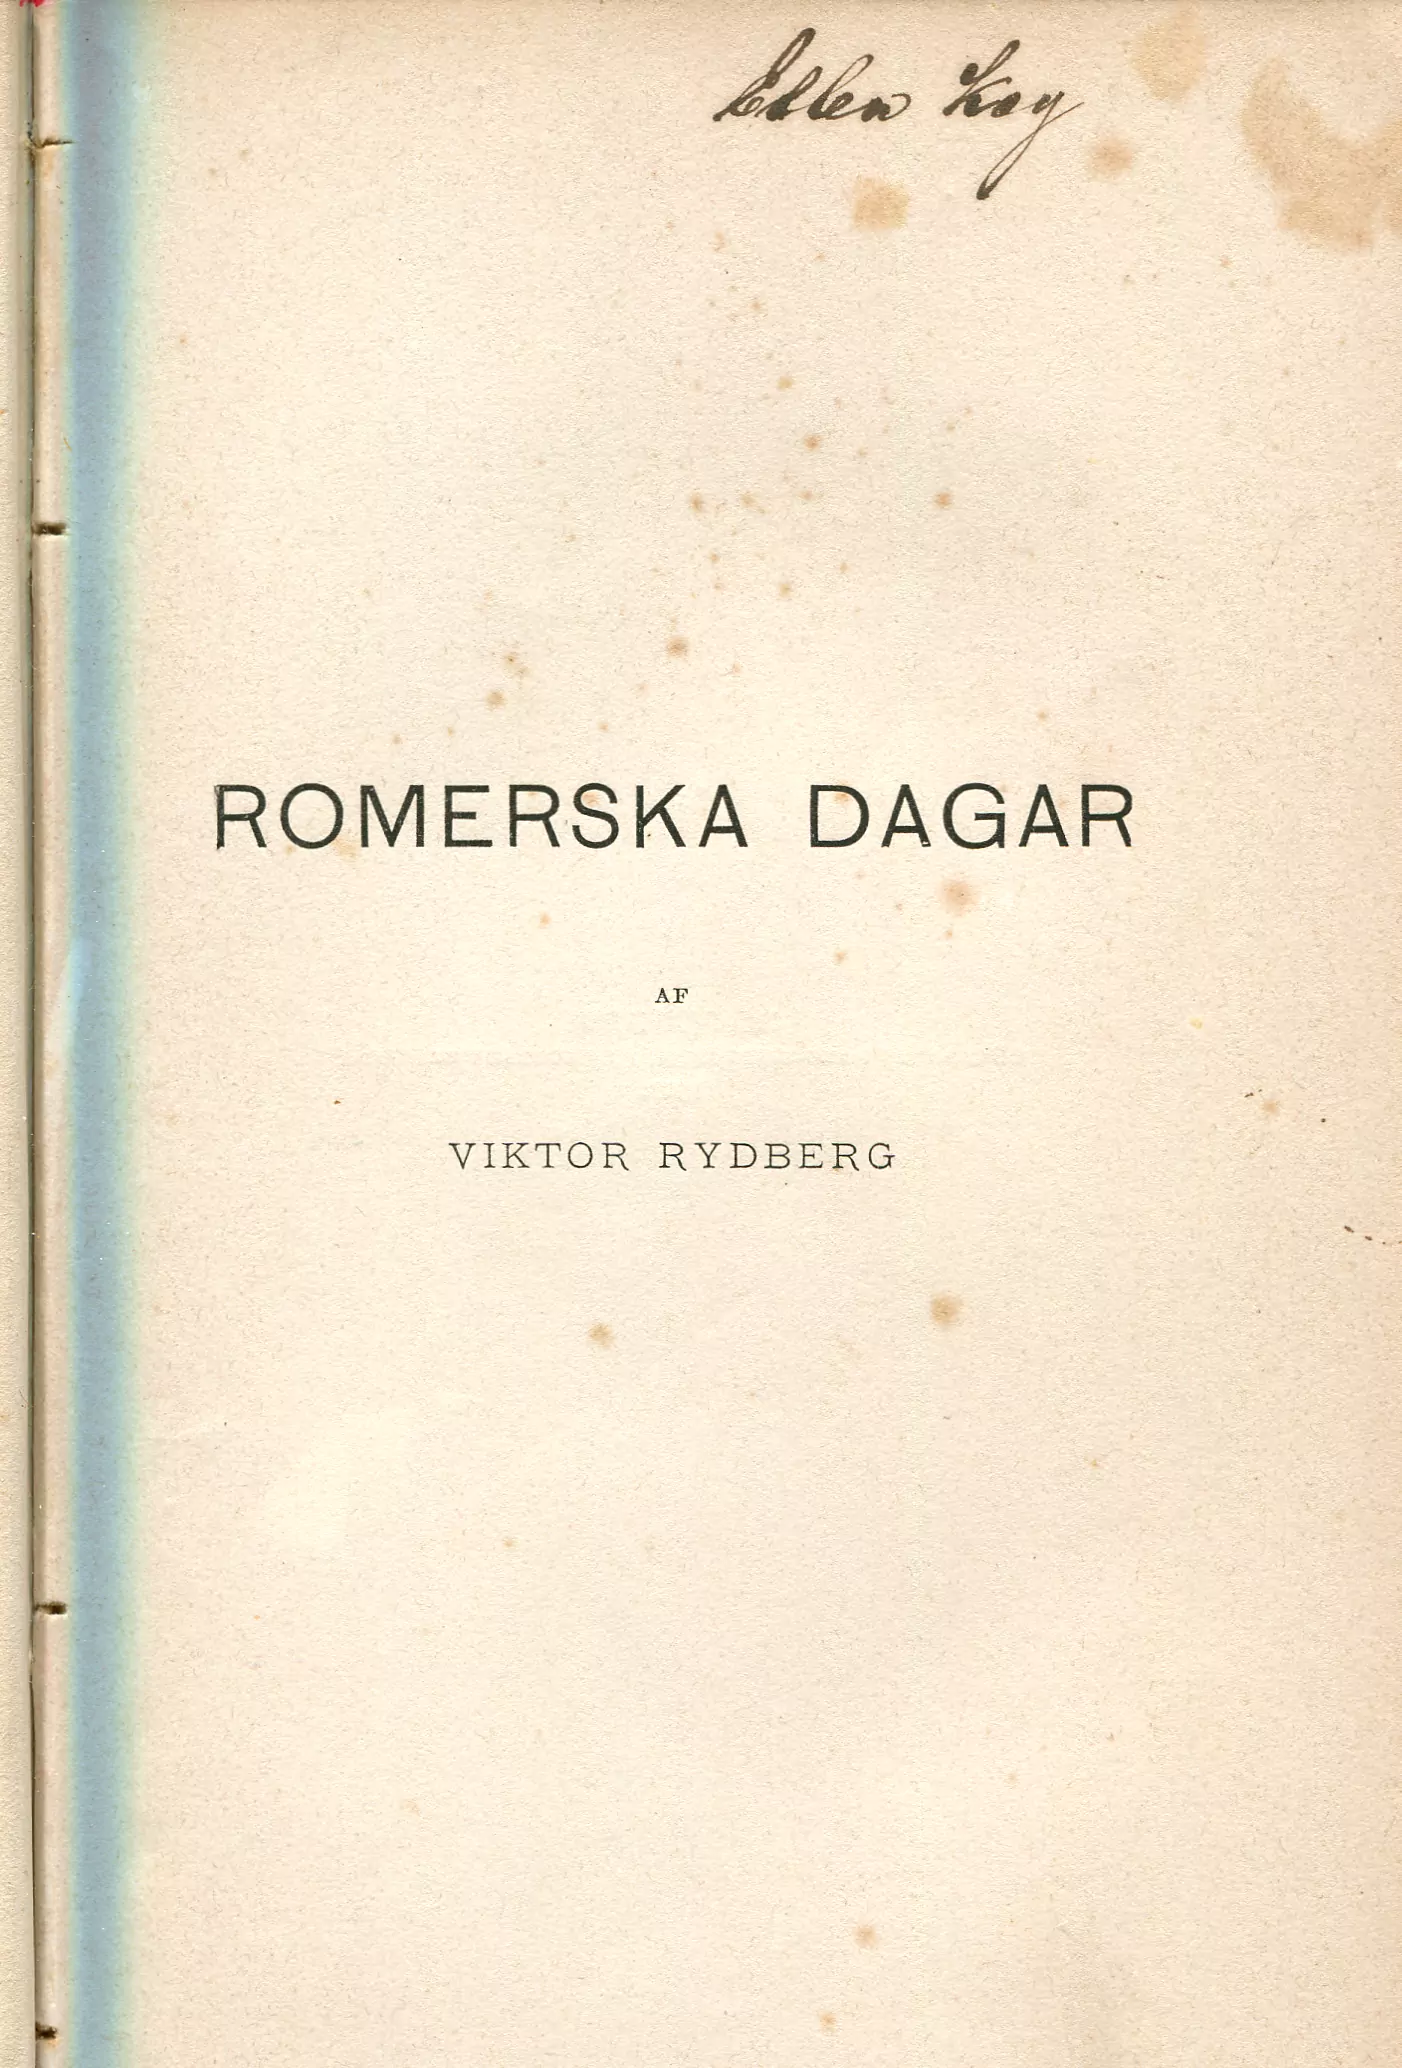 Romerska dagar, Stockholm 1882